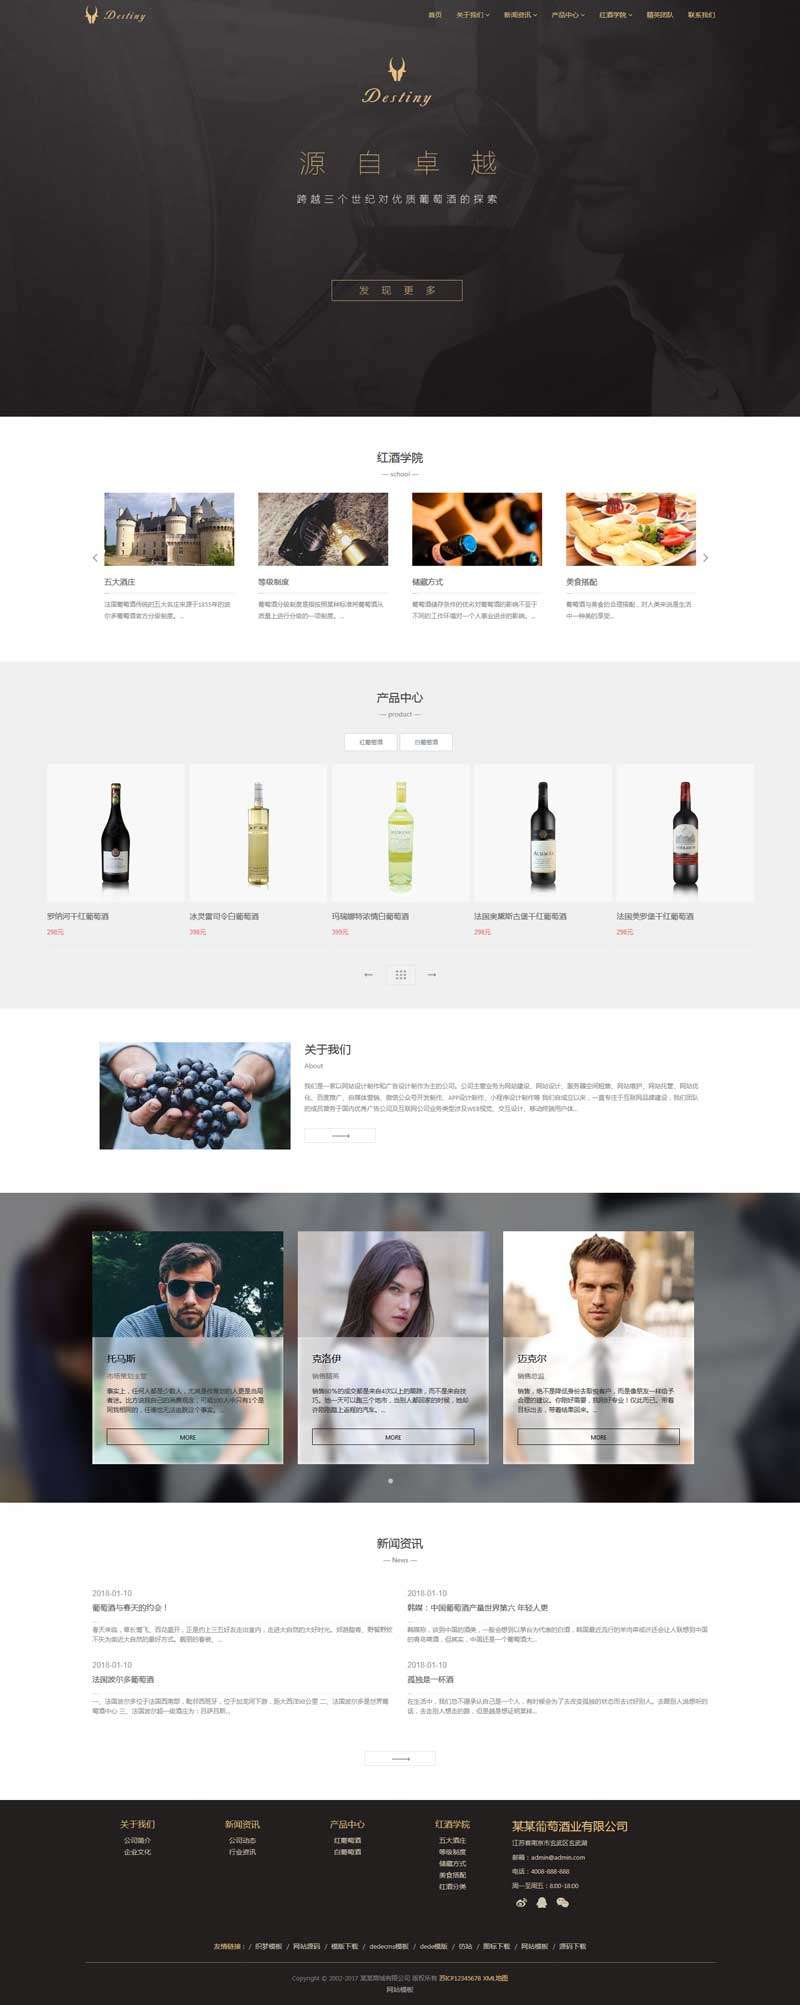 葡萄酒业贸易公司网站织梦Dede源码带手机端效果图